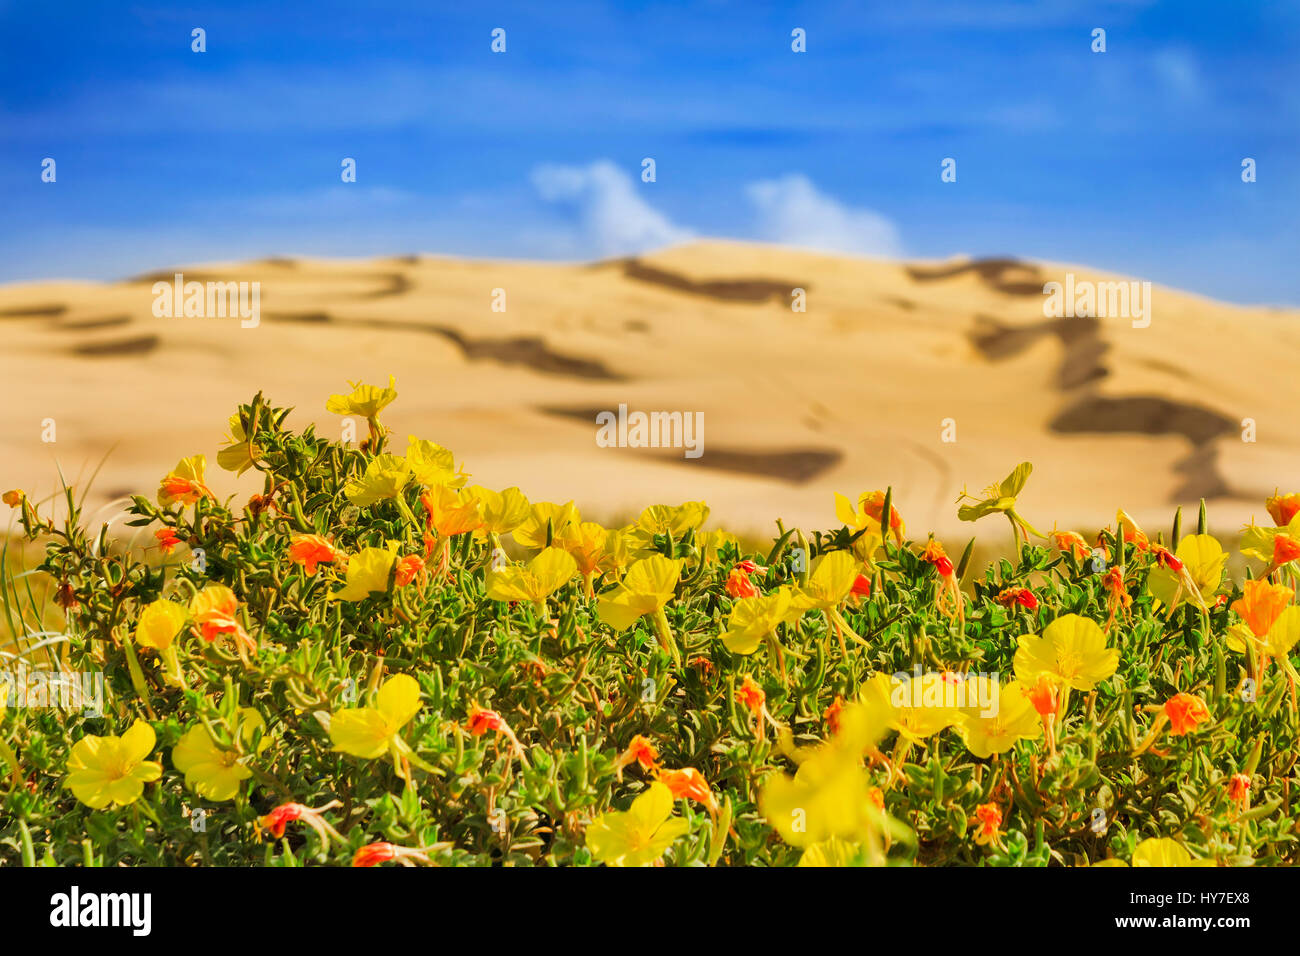 Fiore rosso giallo fiori nella parte anteriore delle zone aride dune di sabbia di Stockton Beach, NSW Pacific Coast, Australia. Foto Stock